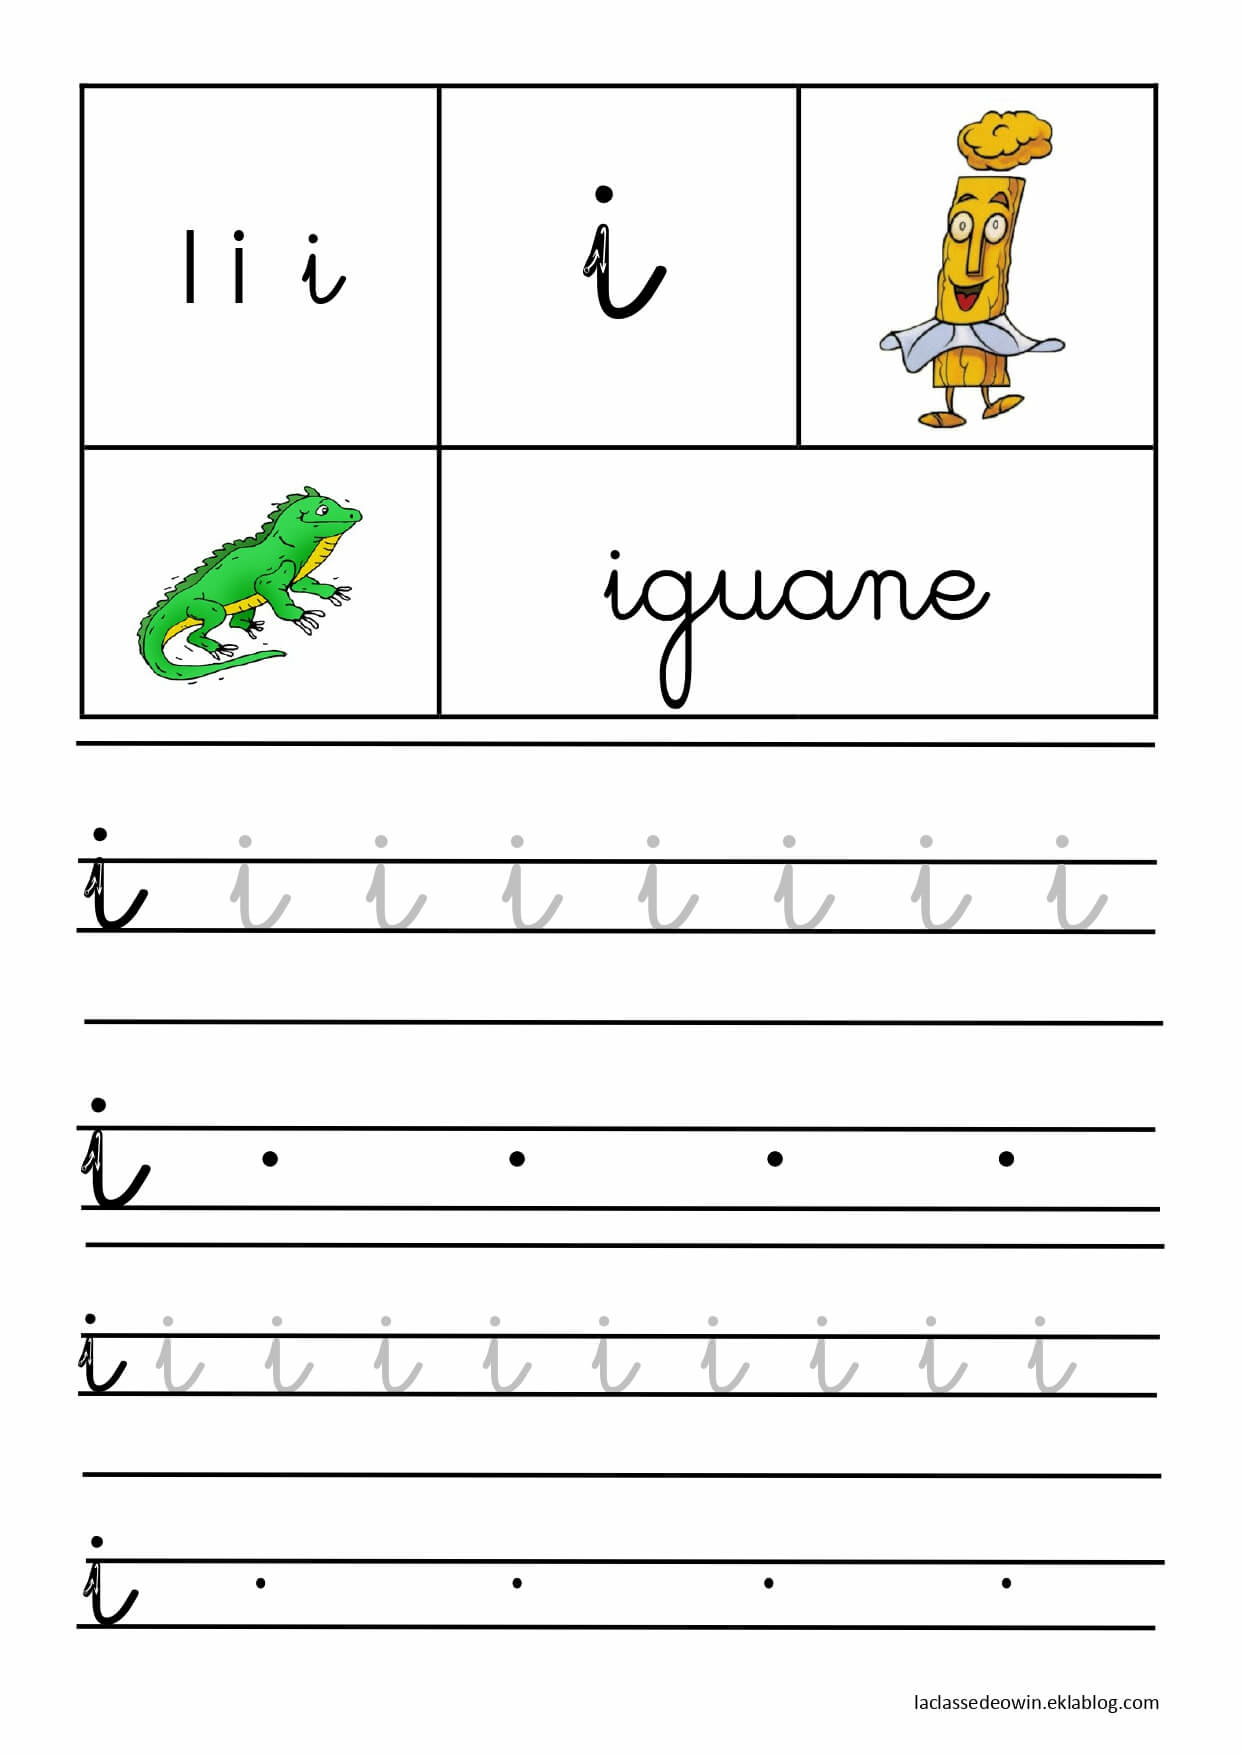   Lettre I pour iguane, écriture cursive GS 